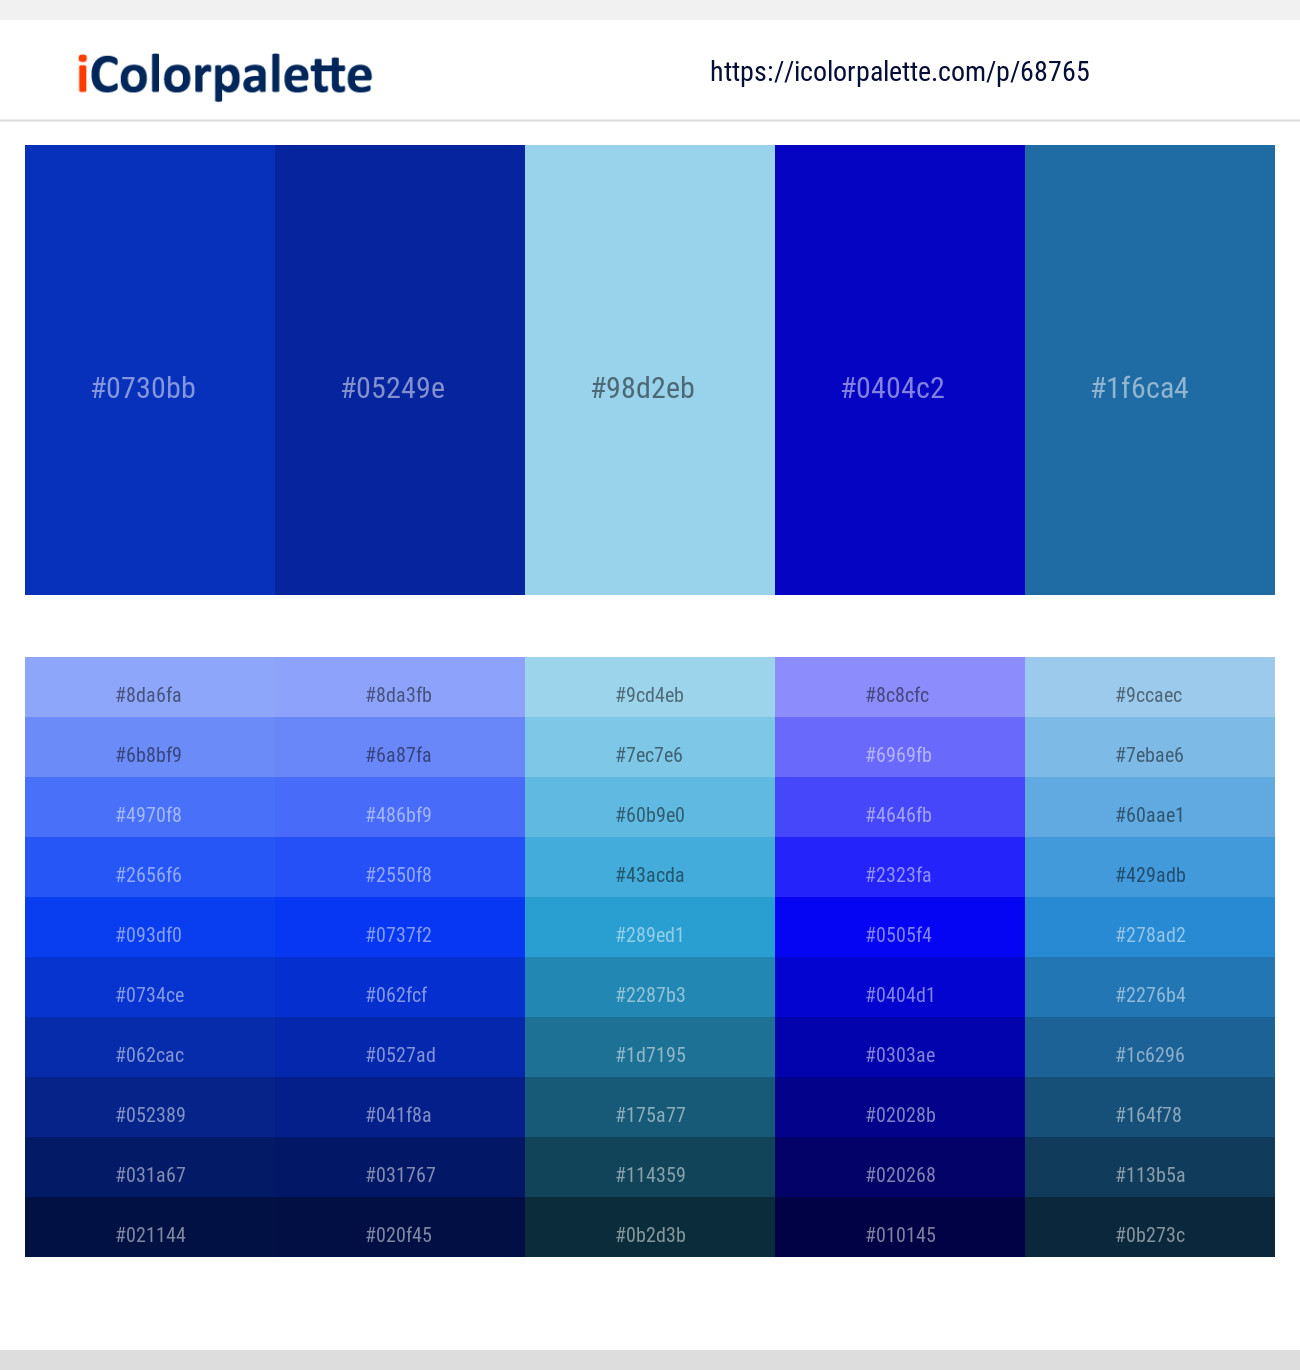 International Klein Blue – International Klein Blue – Cornflower – Dark Blue  – Matisse Color scheme | iColorpalette